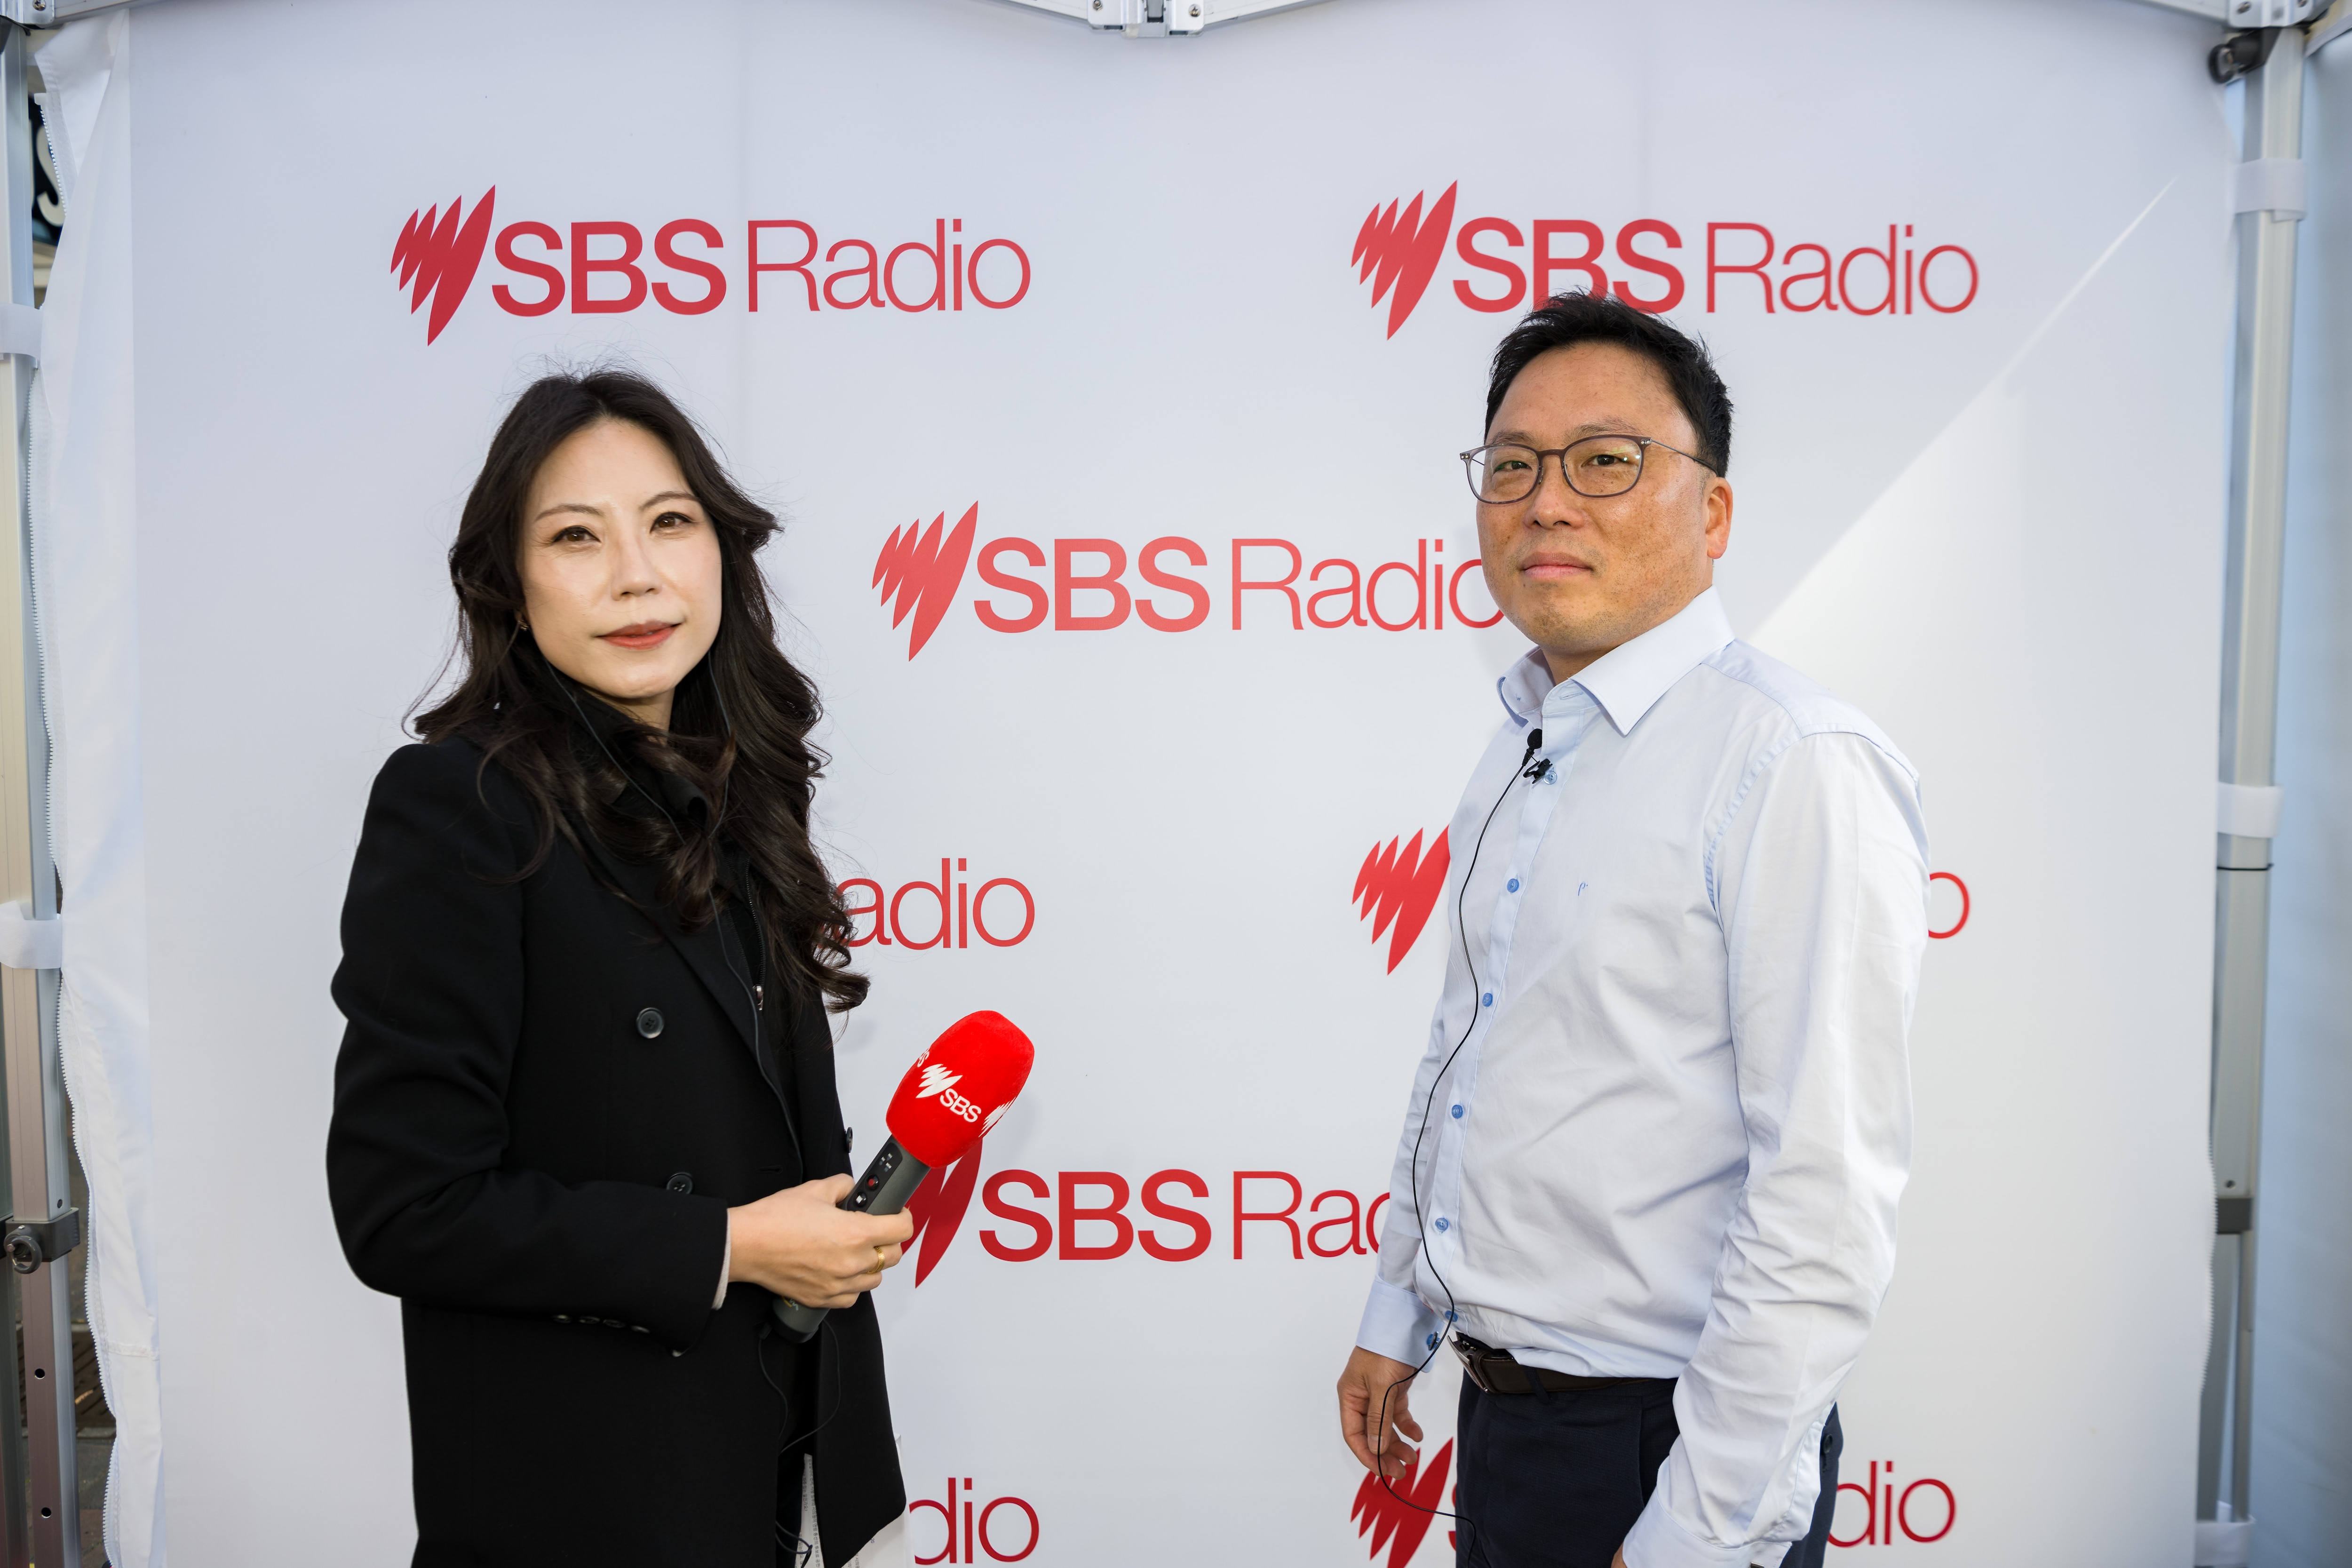 SBS 한국어 프로그램의 나혜인 피디와 라이드 카운슬 노동당 한국계 송강호 시의원